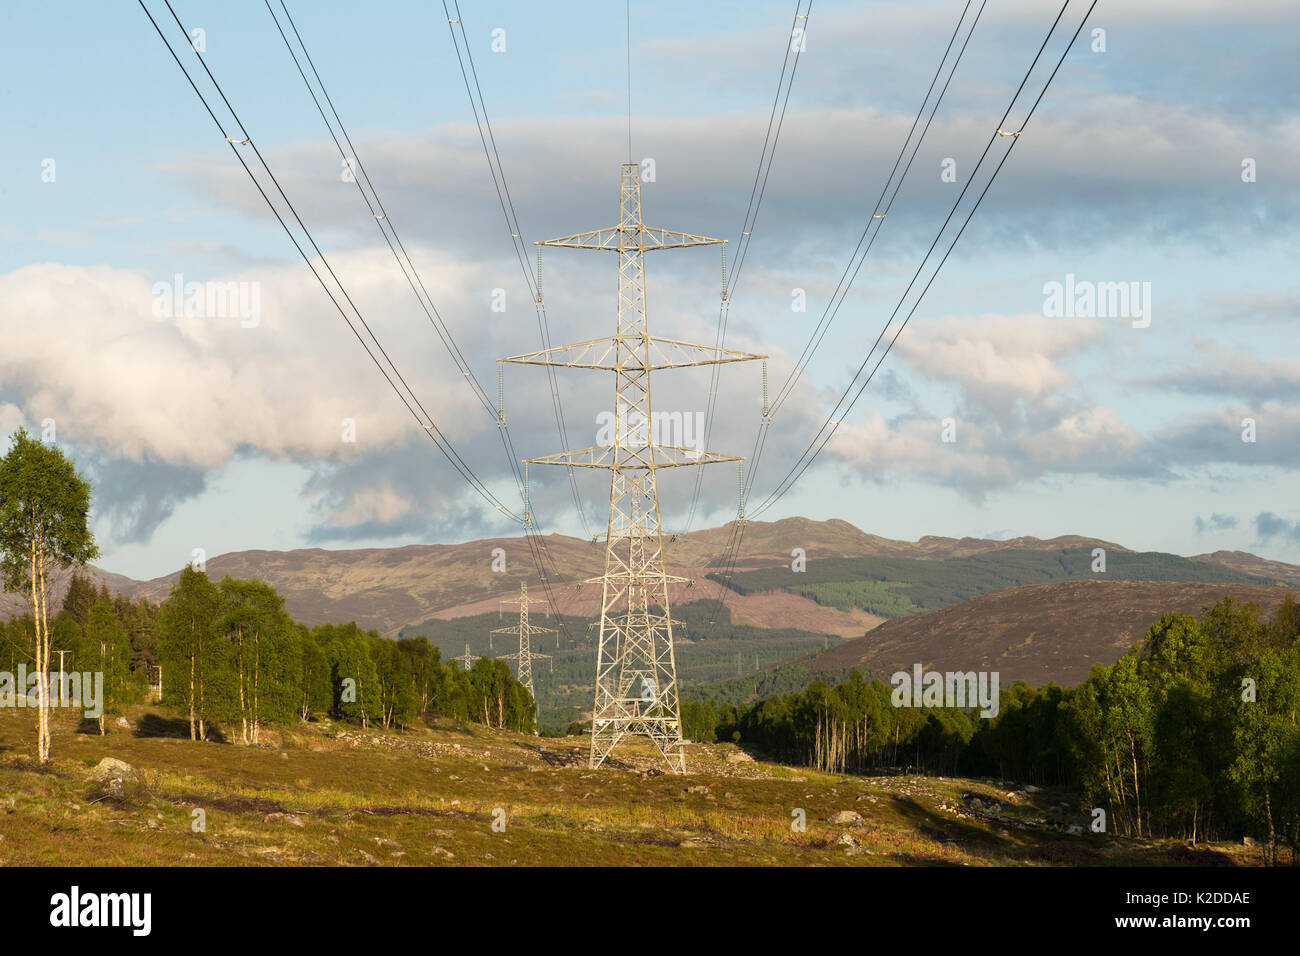 Overhead powerline und Pylon in Berggebieten Lebensraum in der Nähe der Schiehallion in Perthshire, Schottland, UK, Mai. Stockfoto